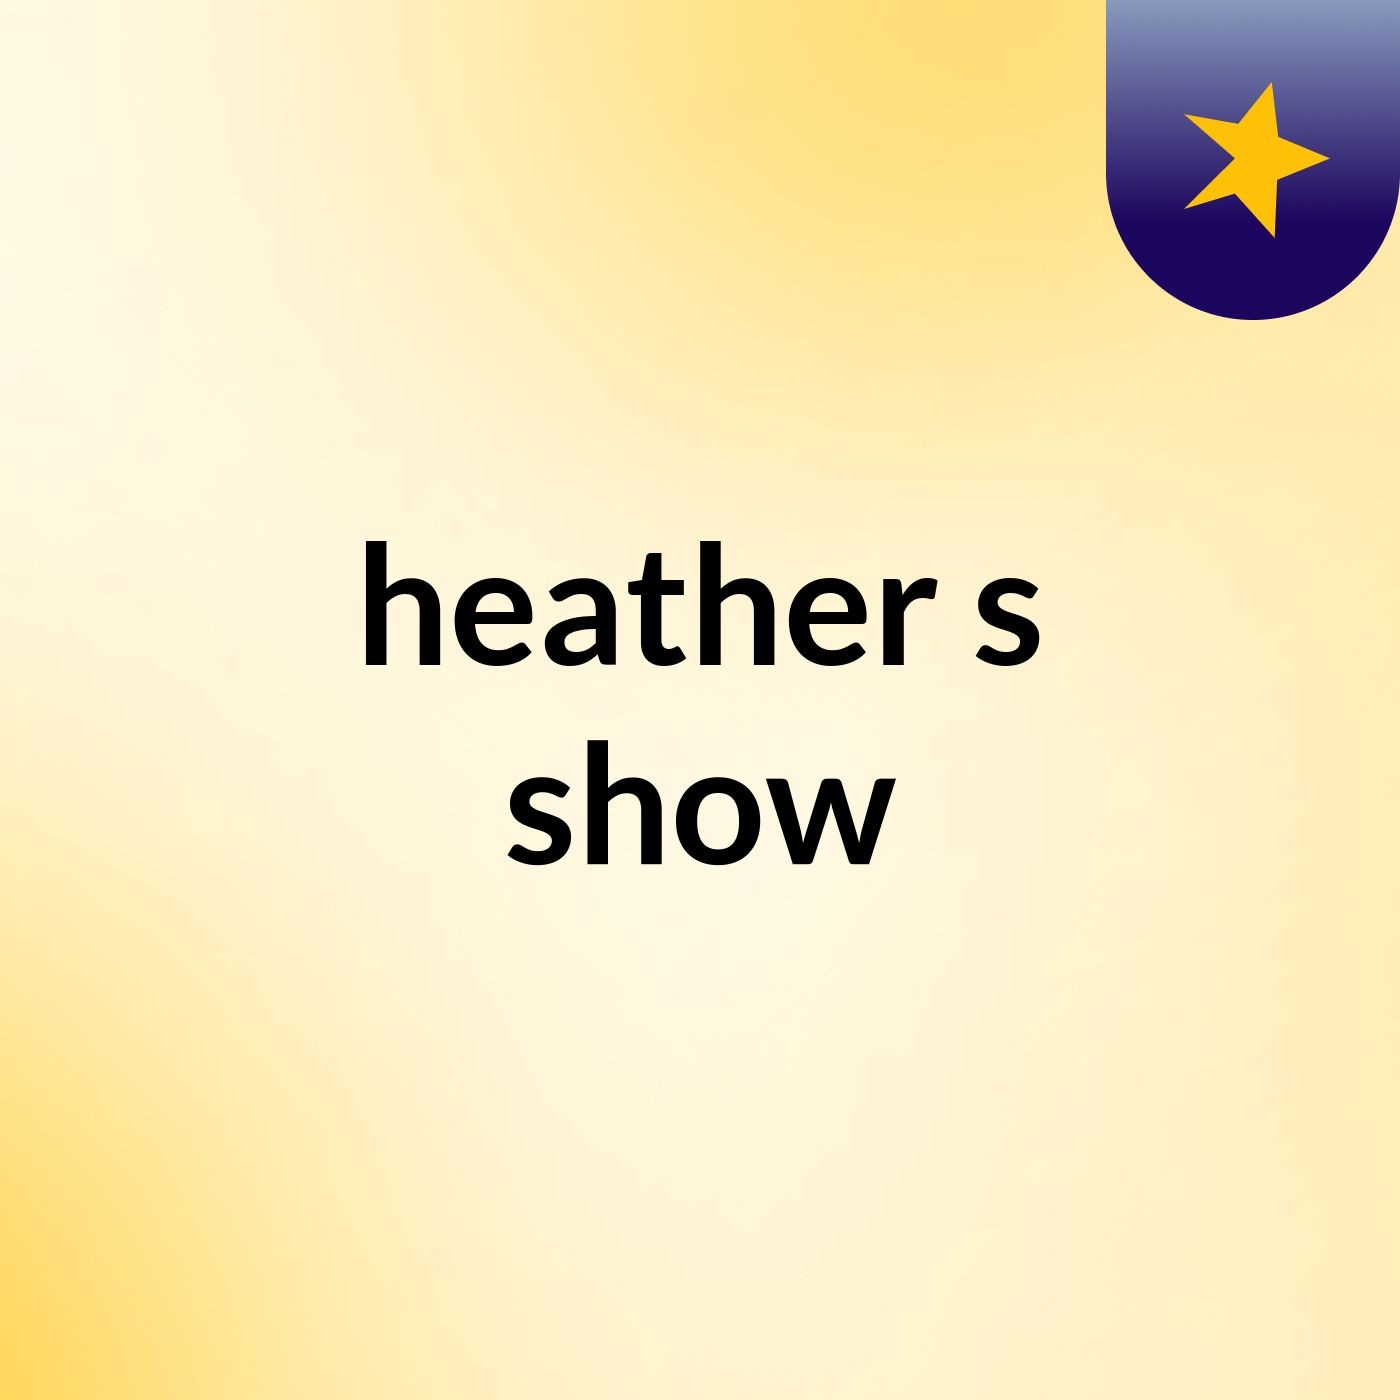 heather's show